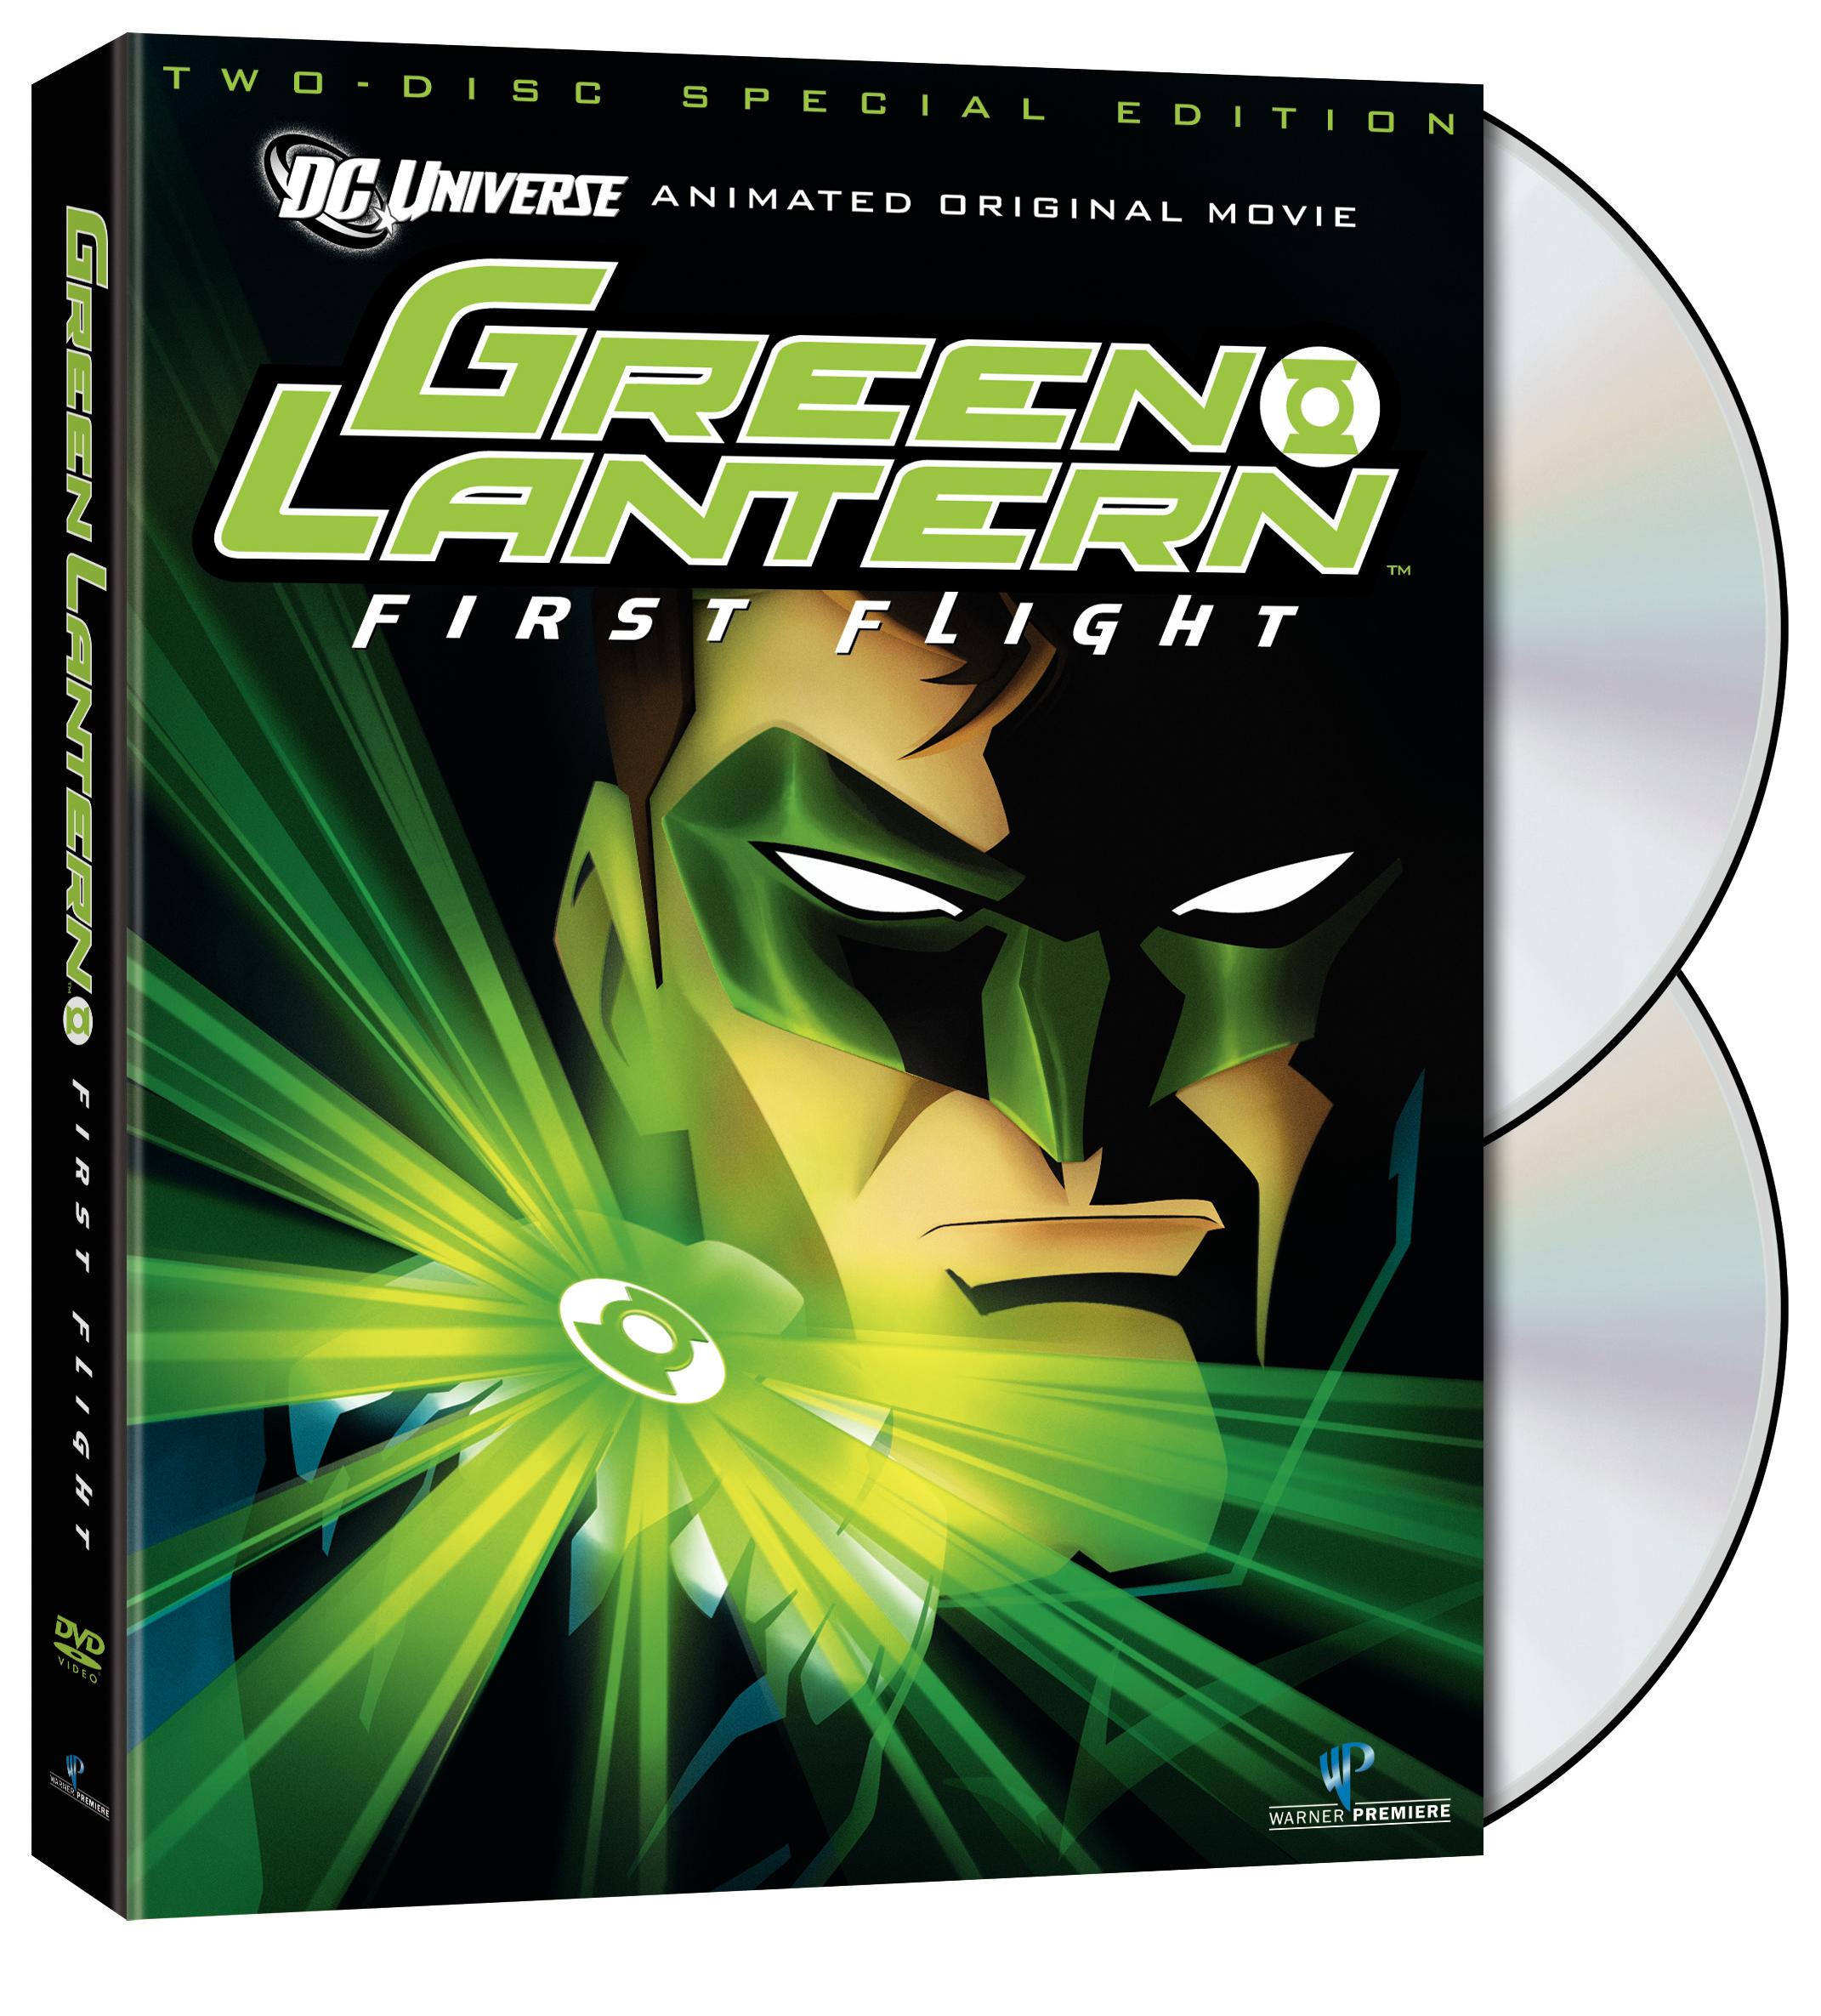 Green Lantern: First Flight HD wallpapers, Desktop wallpaper - most viewed